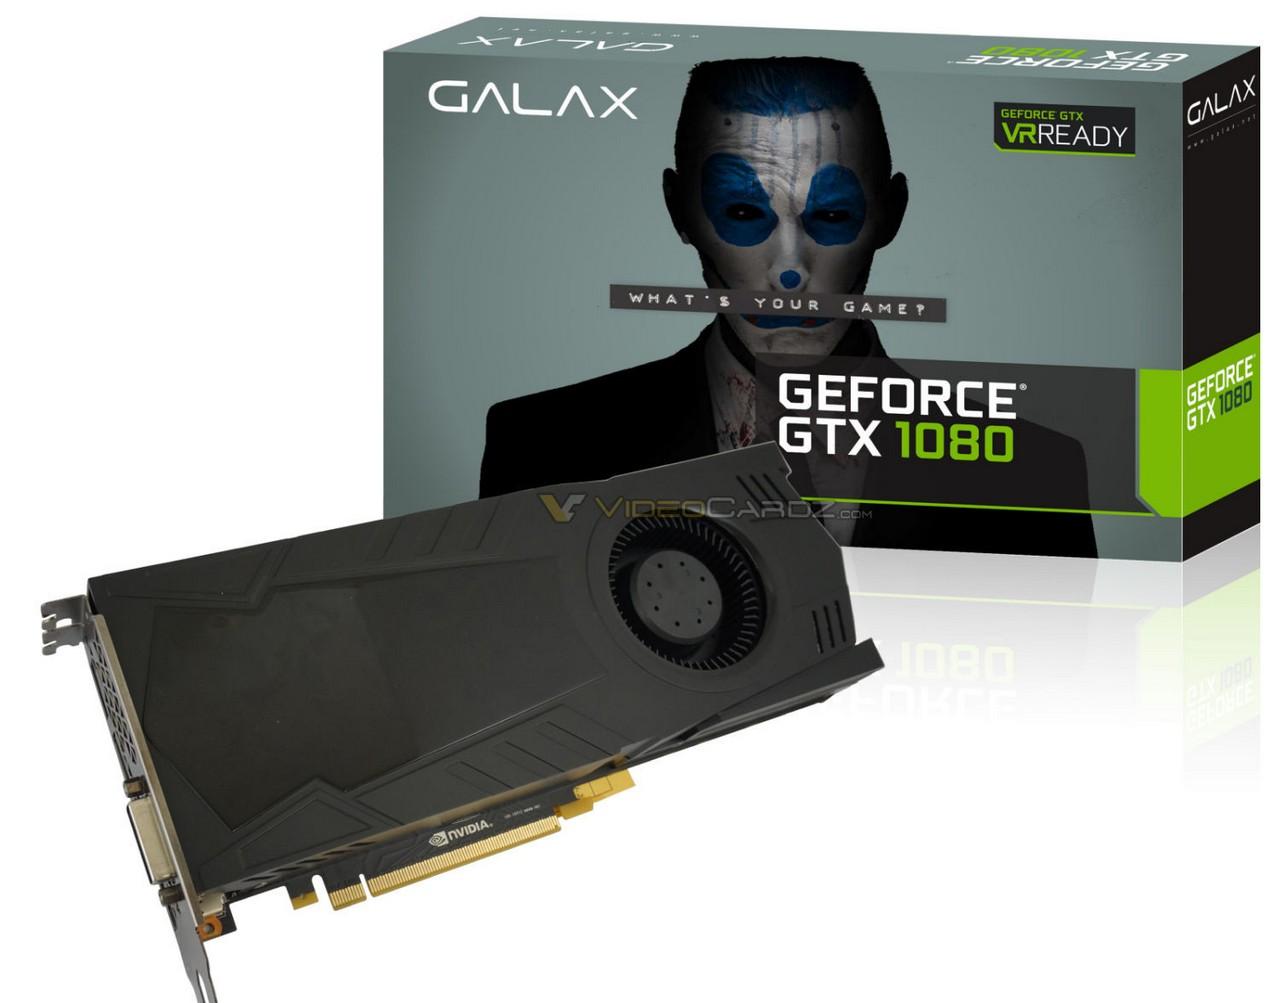 Lộ diện các hình ảnh mới của card đồ họa GeForce GTX 1080 của Galax